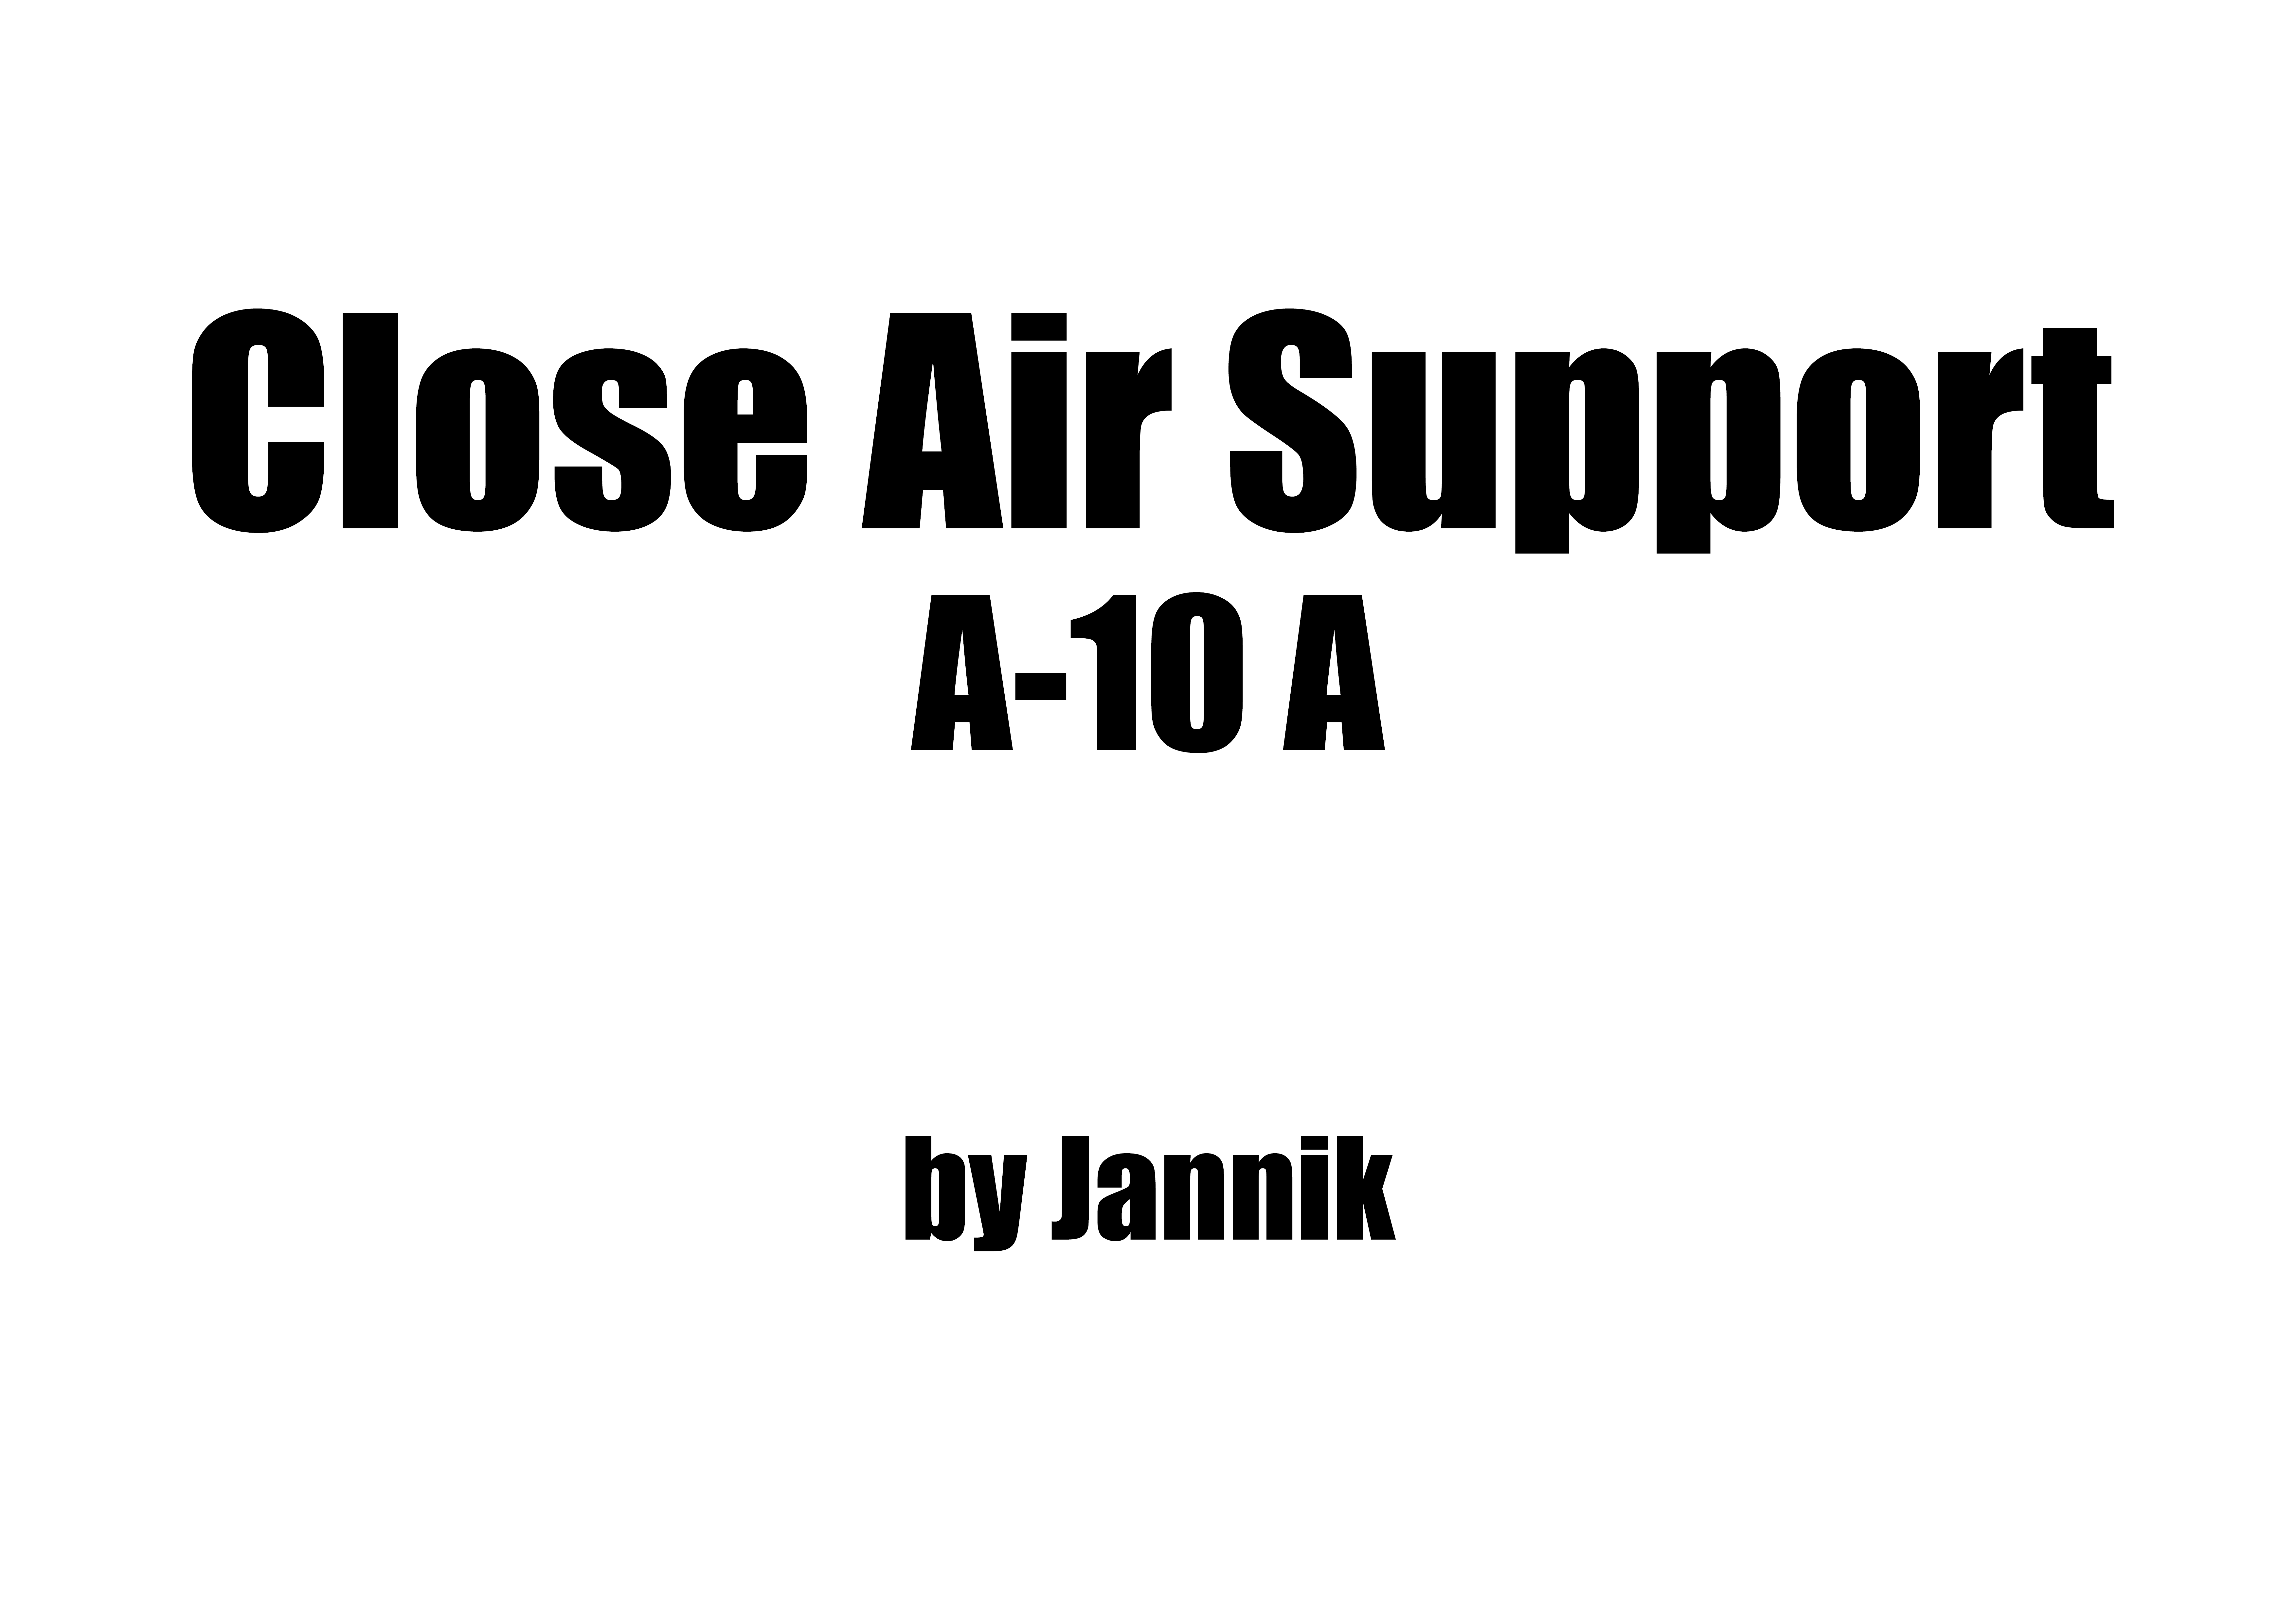 A-10A Close Air Support